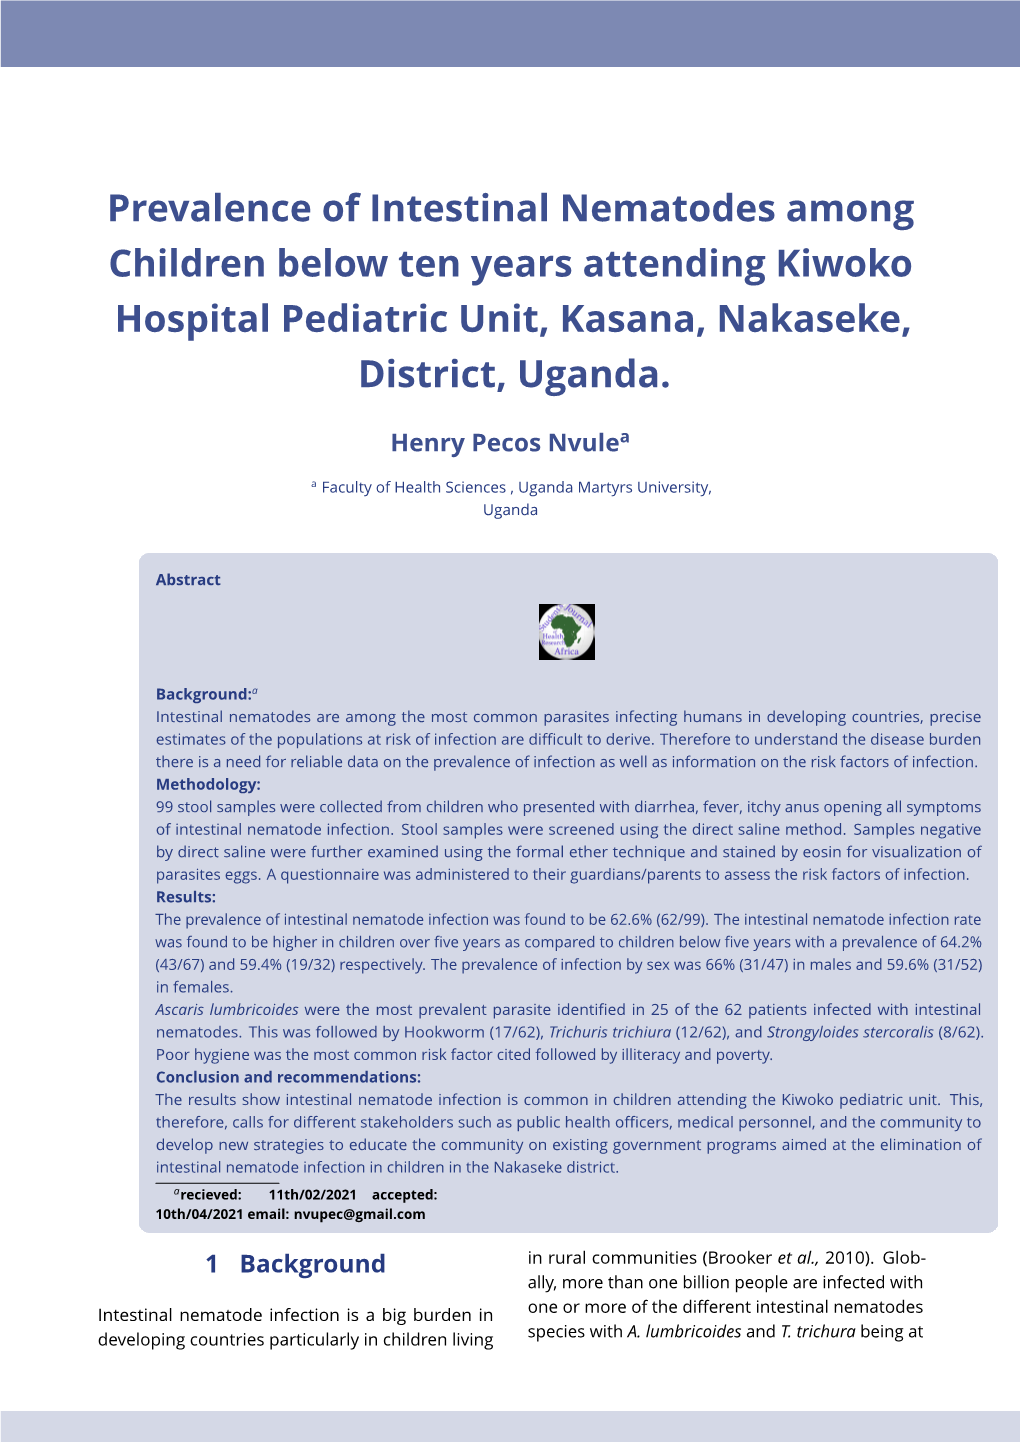 Prevalence of Intestinal Nematodes Among Children Below Ten Years Attending Kiwoko Hospital Pediatric Unit, Kasana, Nakaseke, District, Uganda